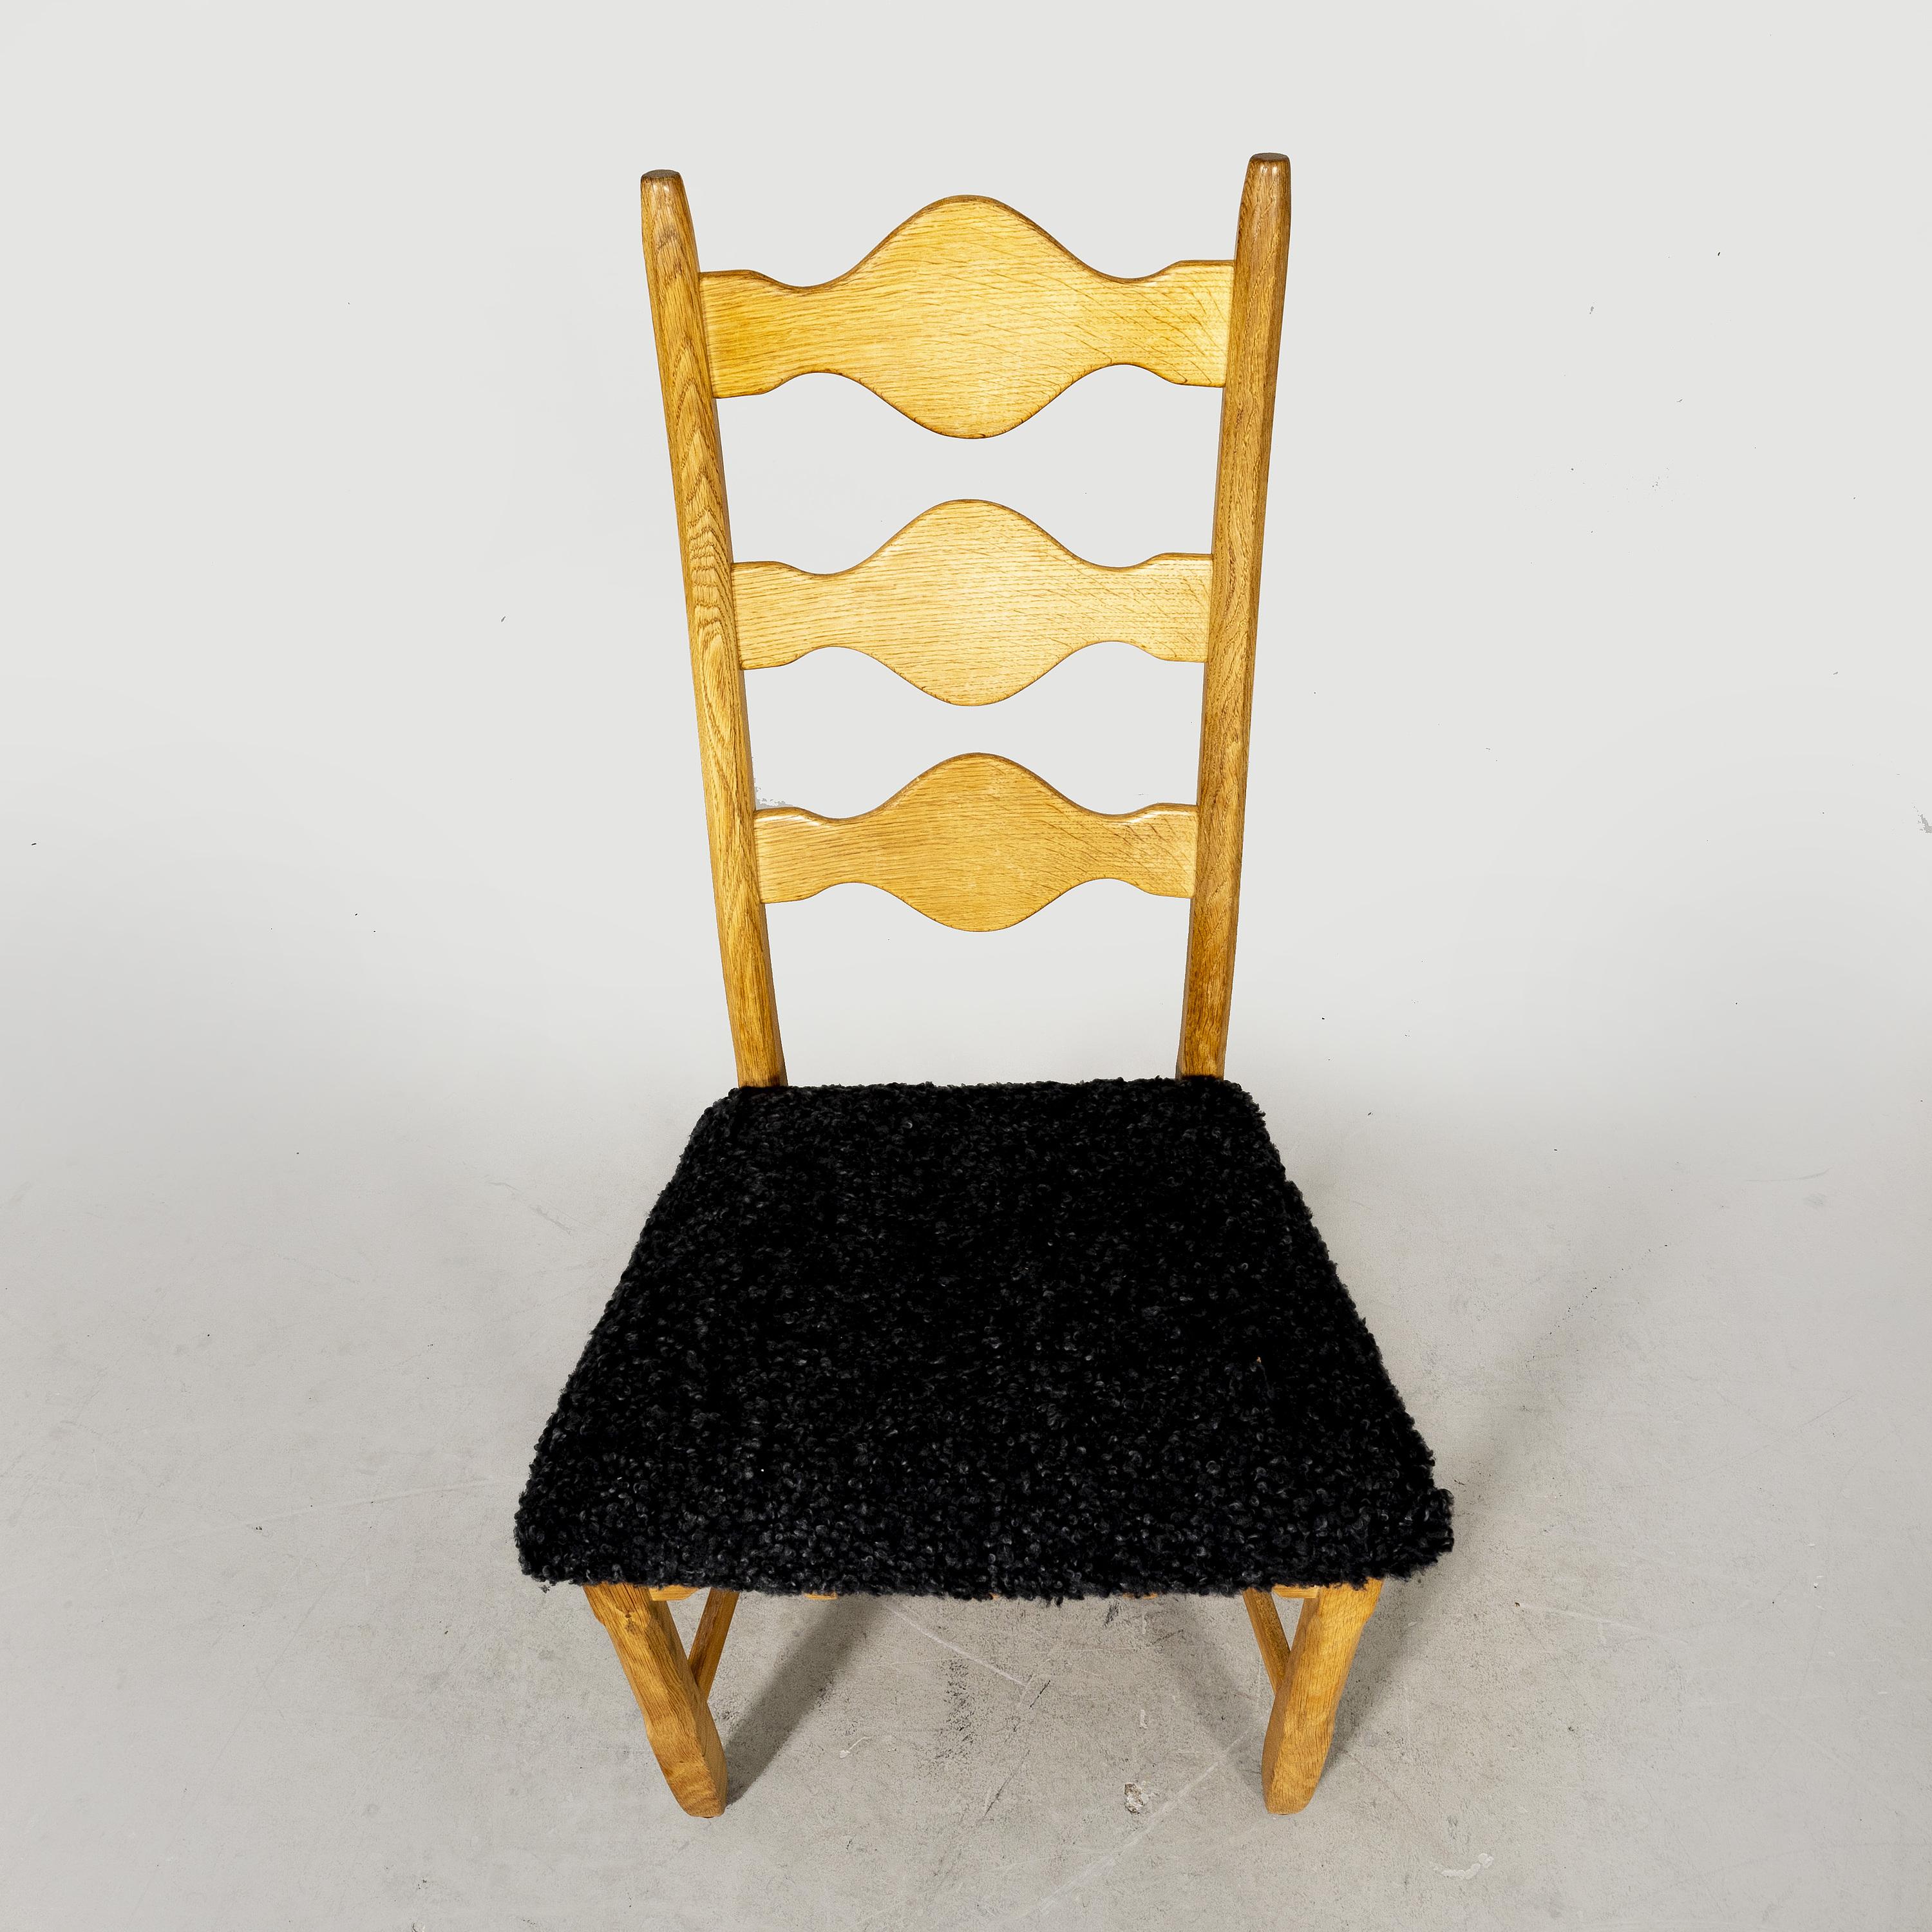 Ein Satz von 8 Esszimmerstühlen wurde von Henning (Henry) Kjærnulf in den 1960er Jahren entworfen. Die Stühle wurden von der Nyrup Møbelfabrik in Dänemark hergestellt und bilden eine seltene Variante der Kjærnulf 'Razorblade' Serie. Das Set besteht